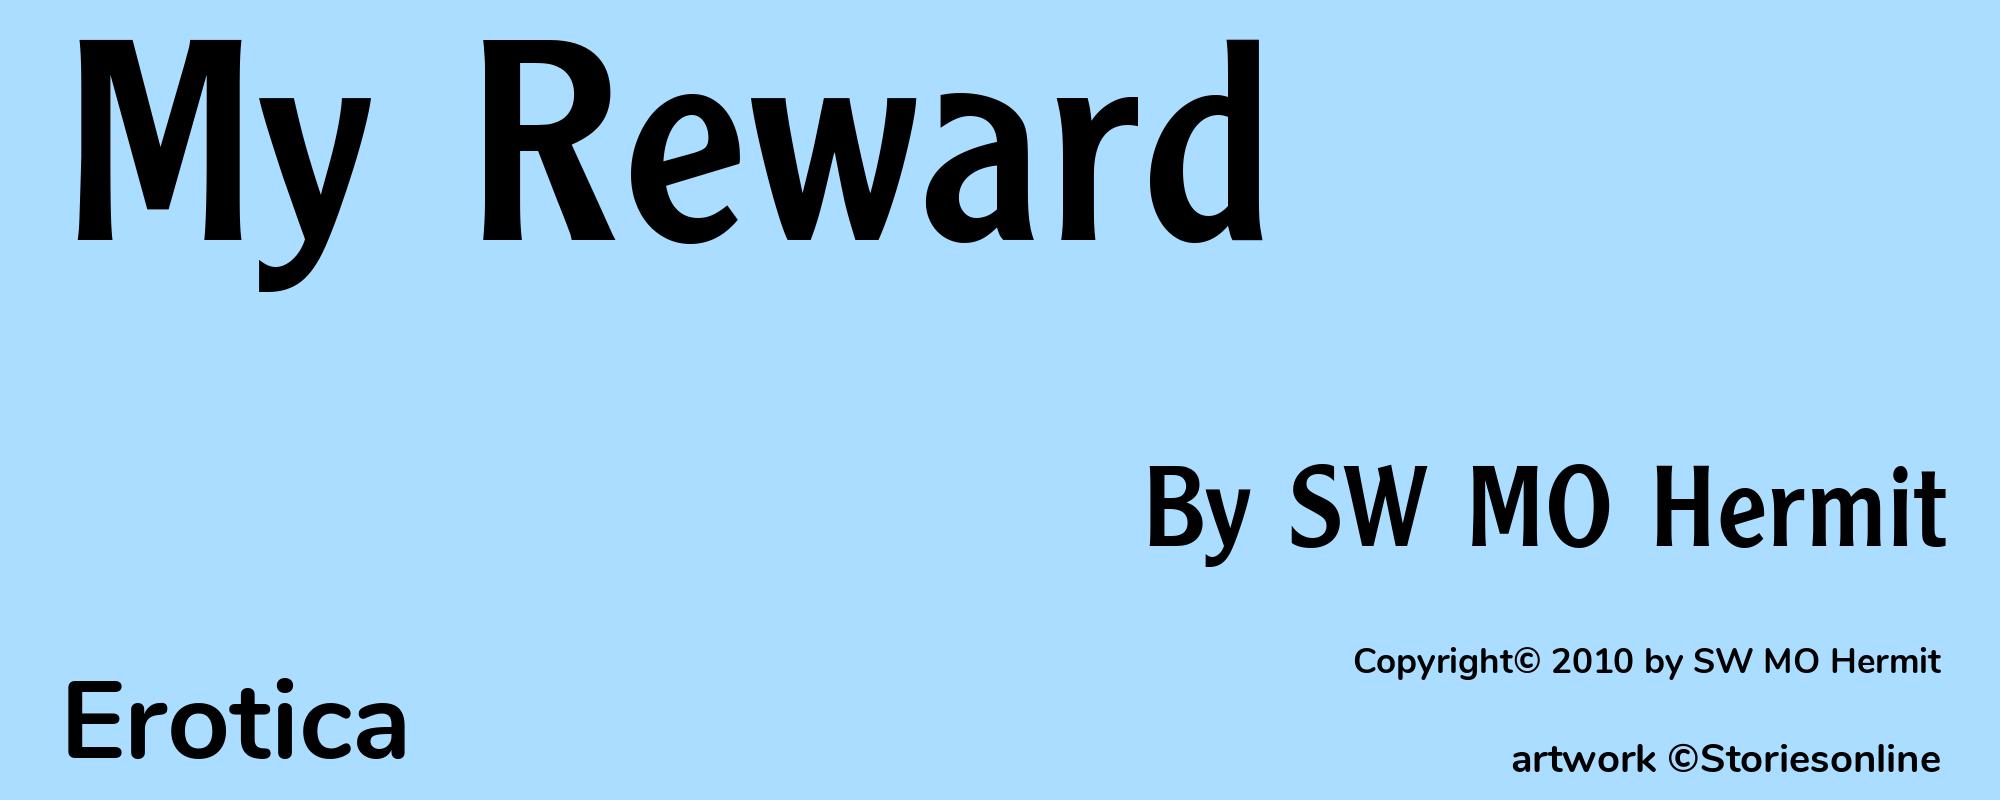 My Reward - Cover